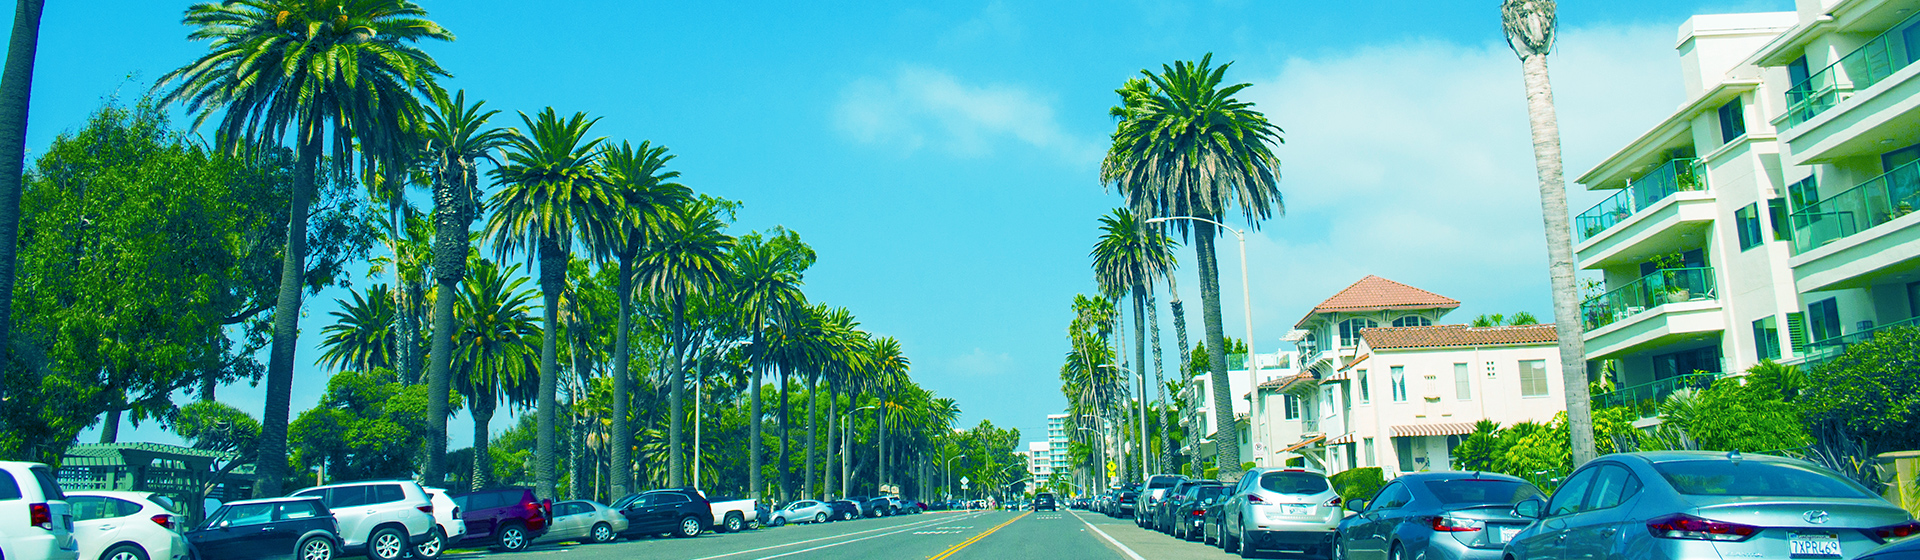 カリフォルニアの市街地の写真